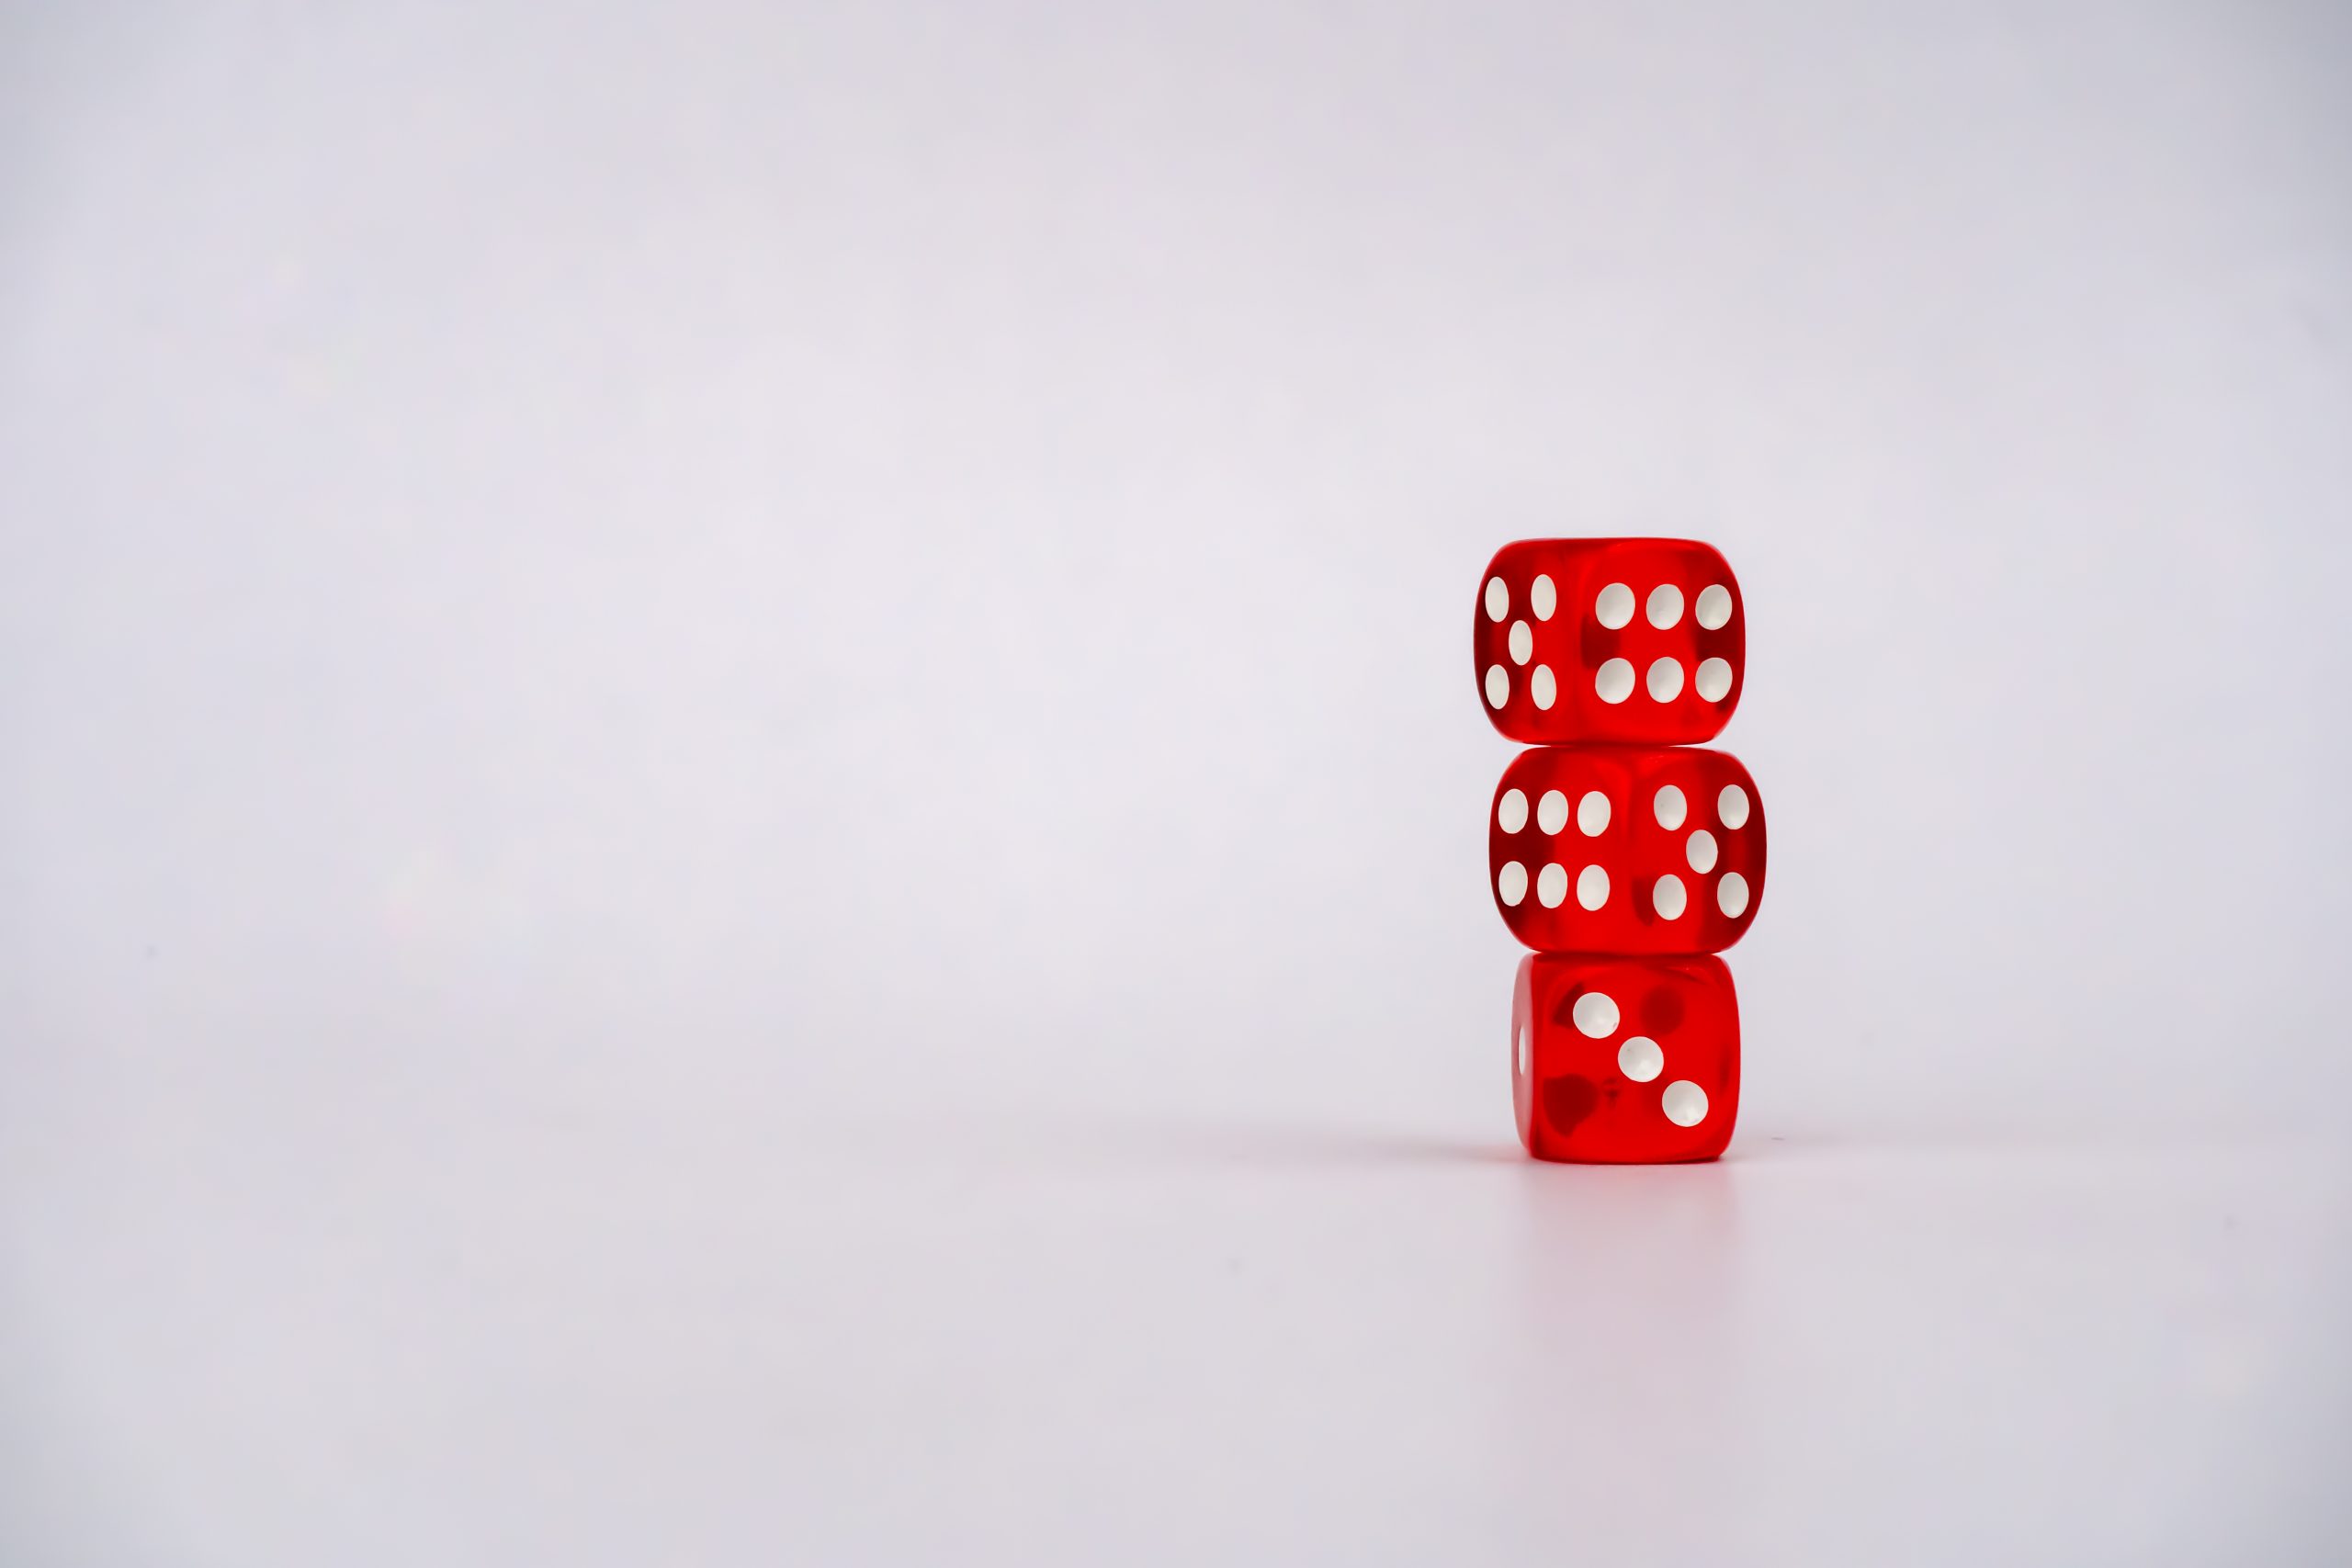 3 dice balancing